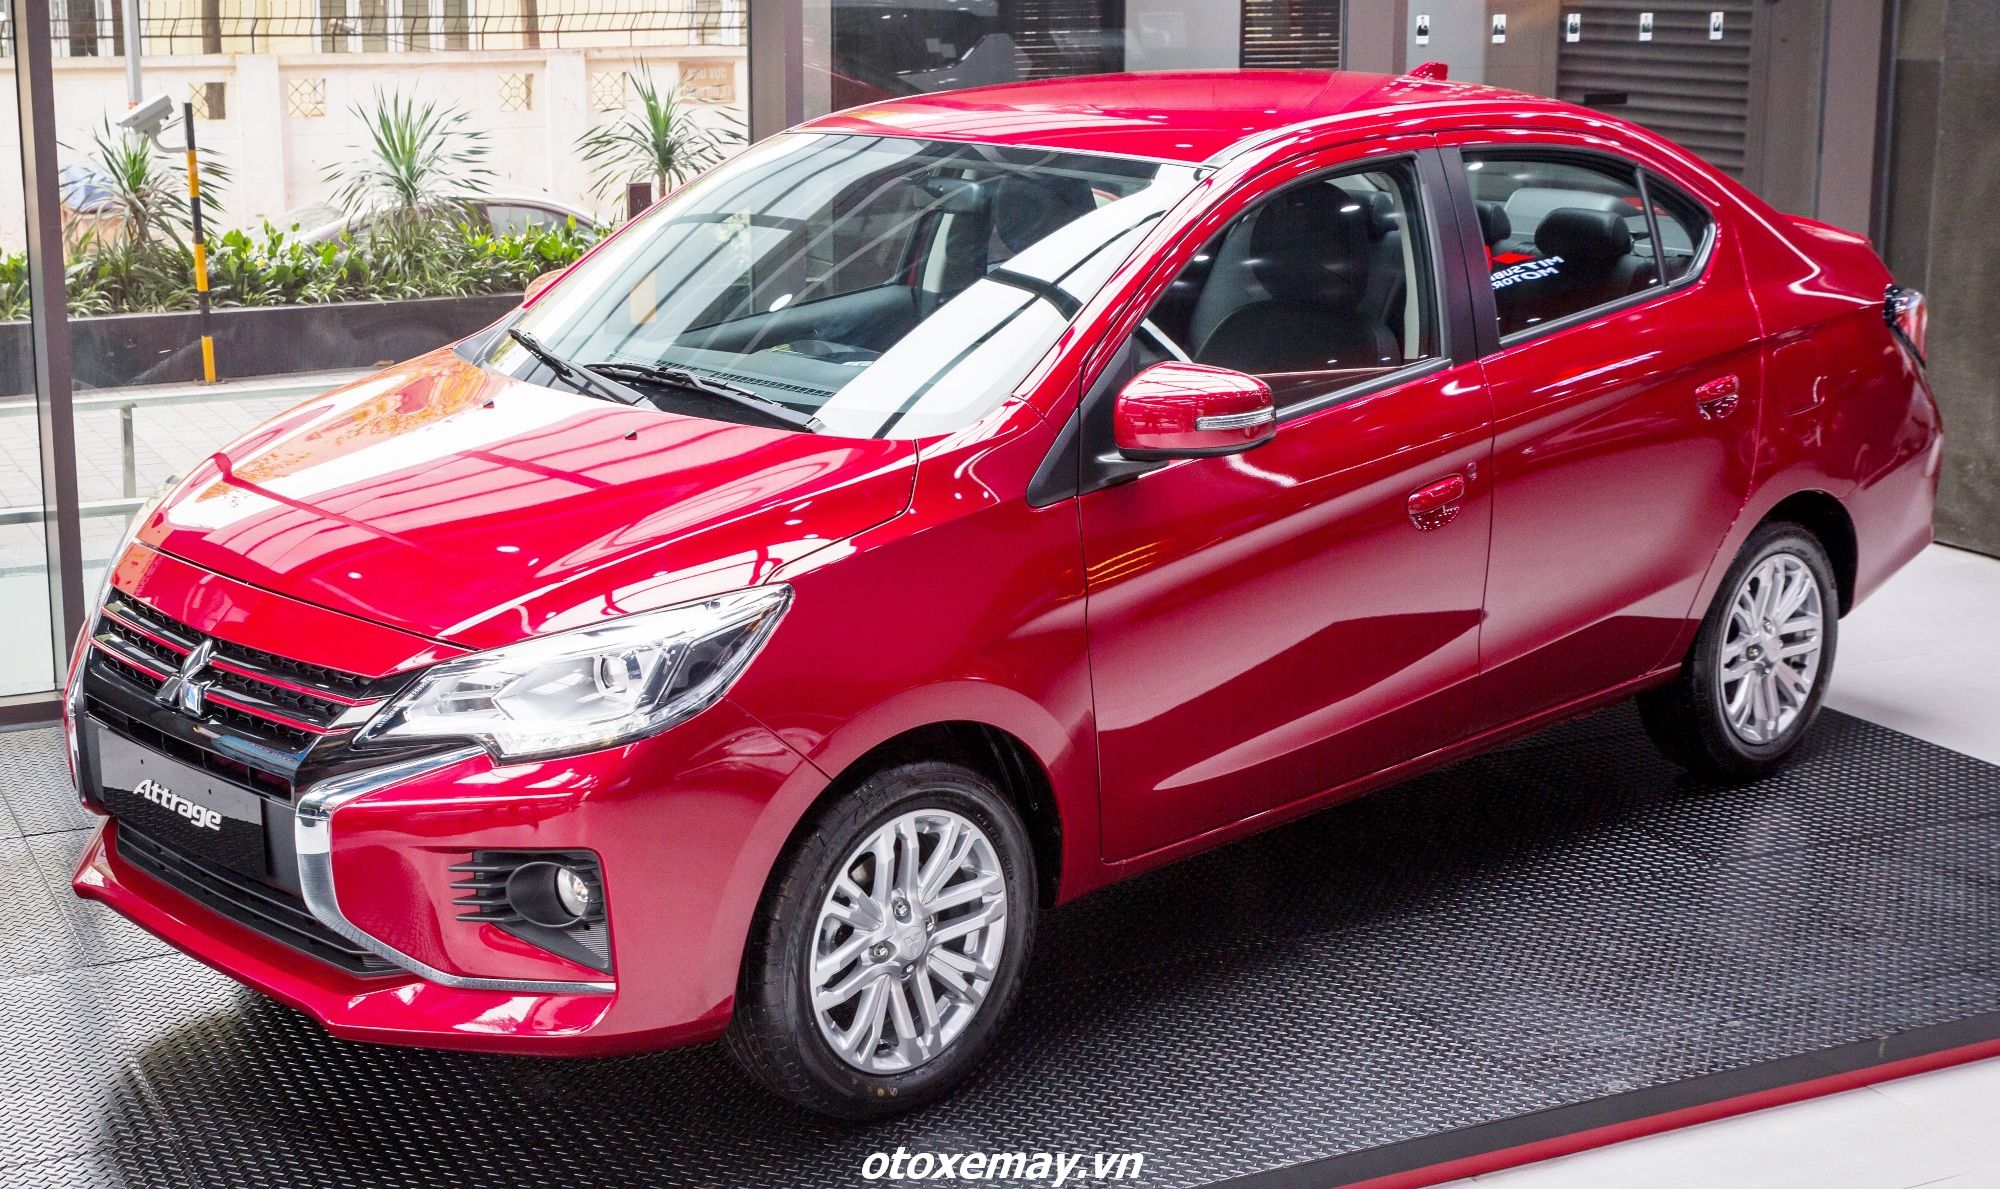 Ra mắt Mitsubishi New Attrage CVT Premium giá 485 triệu đồng